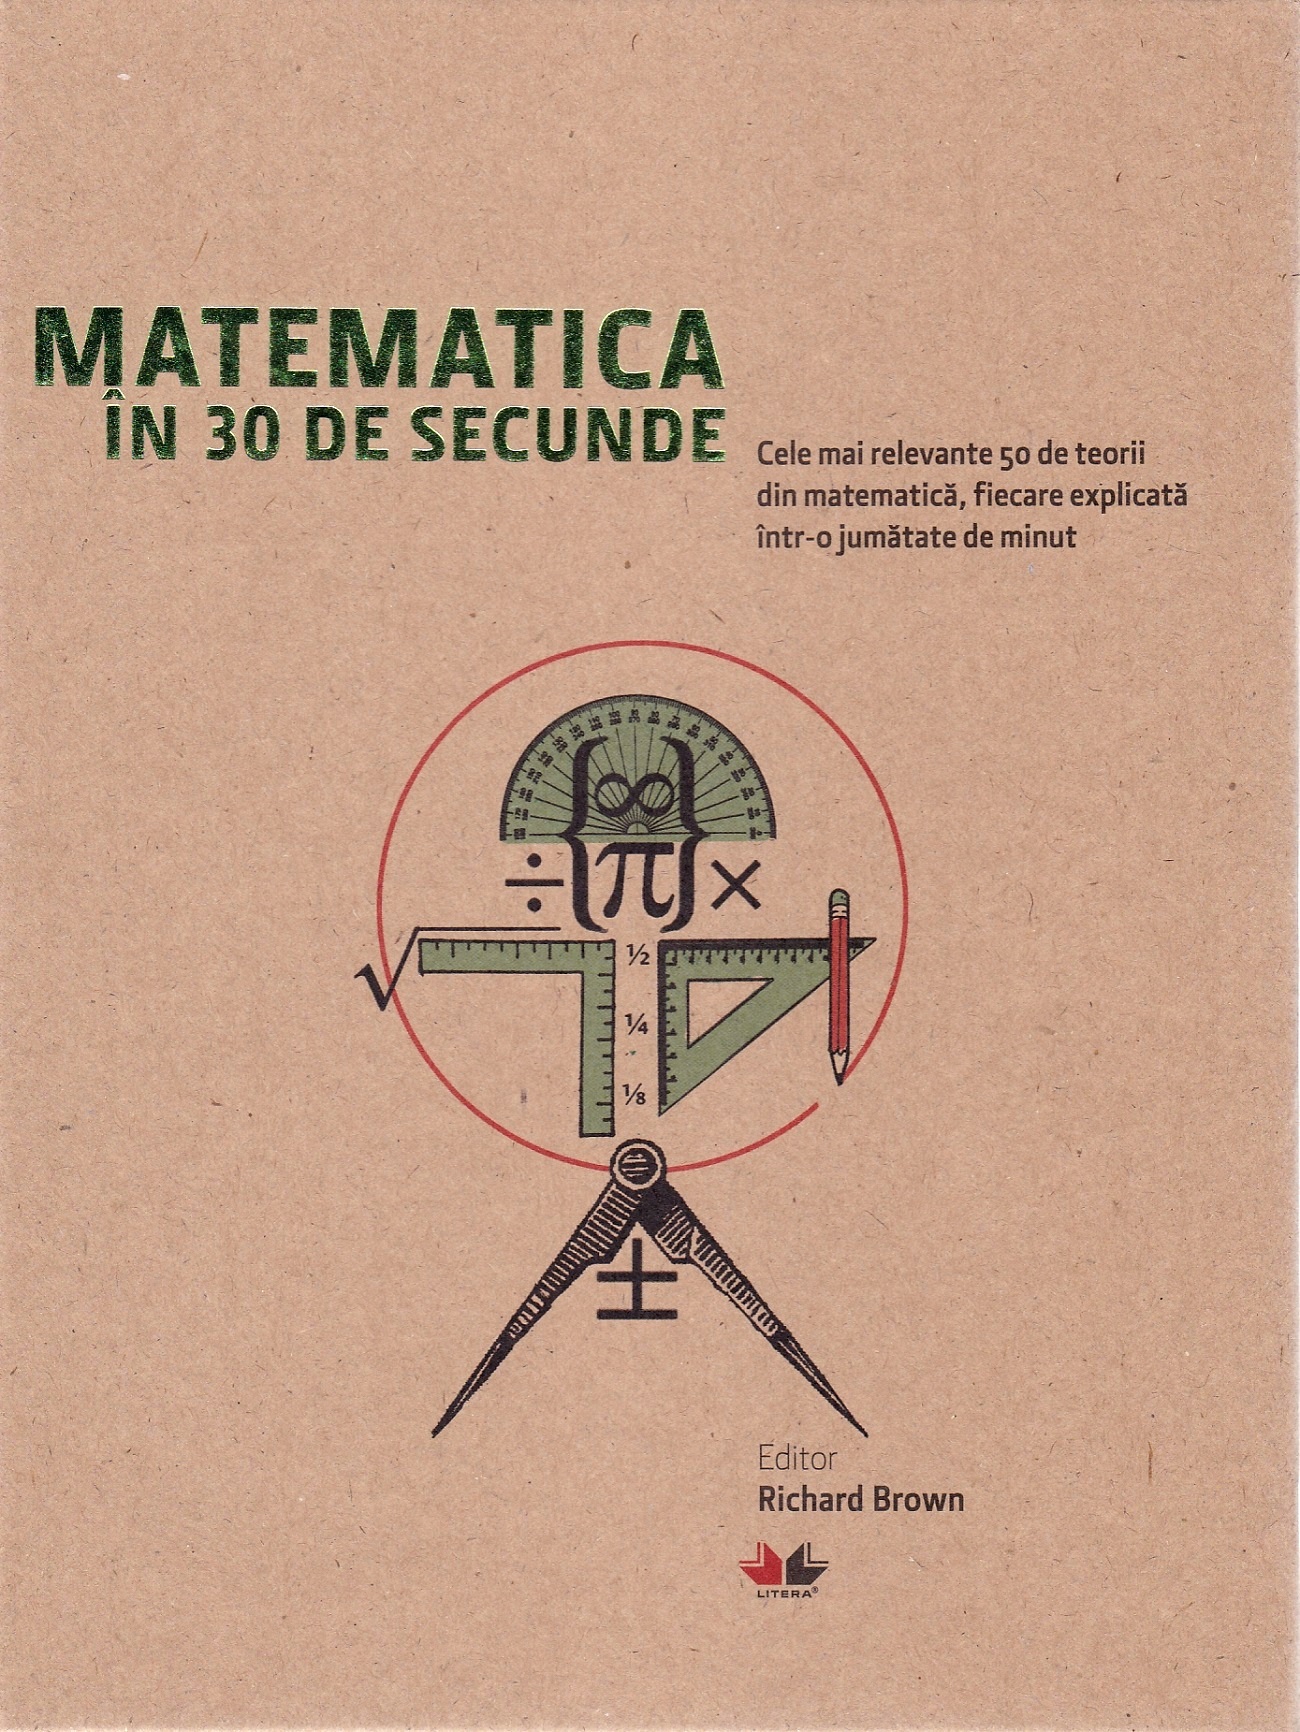 Matematica in 30 de secunde - Richard Brown, Richard Elwes, Robert Fathauer